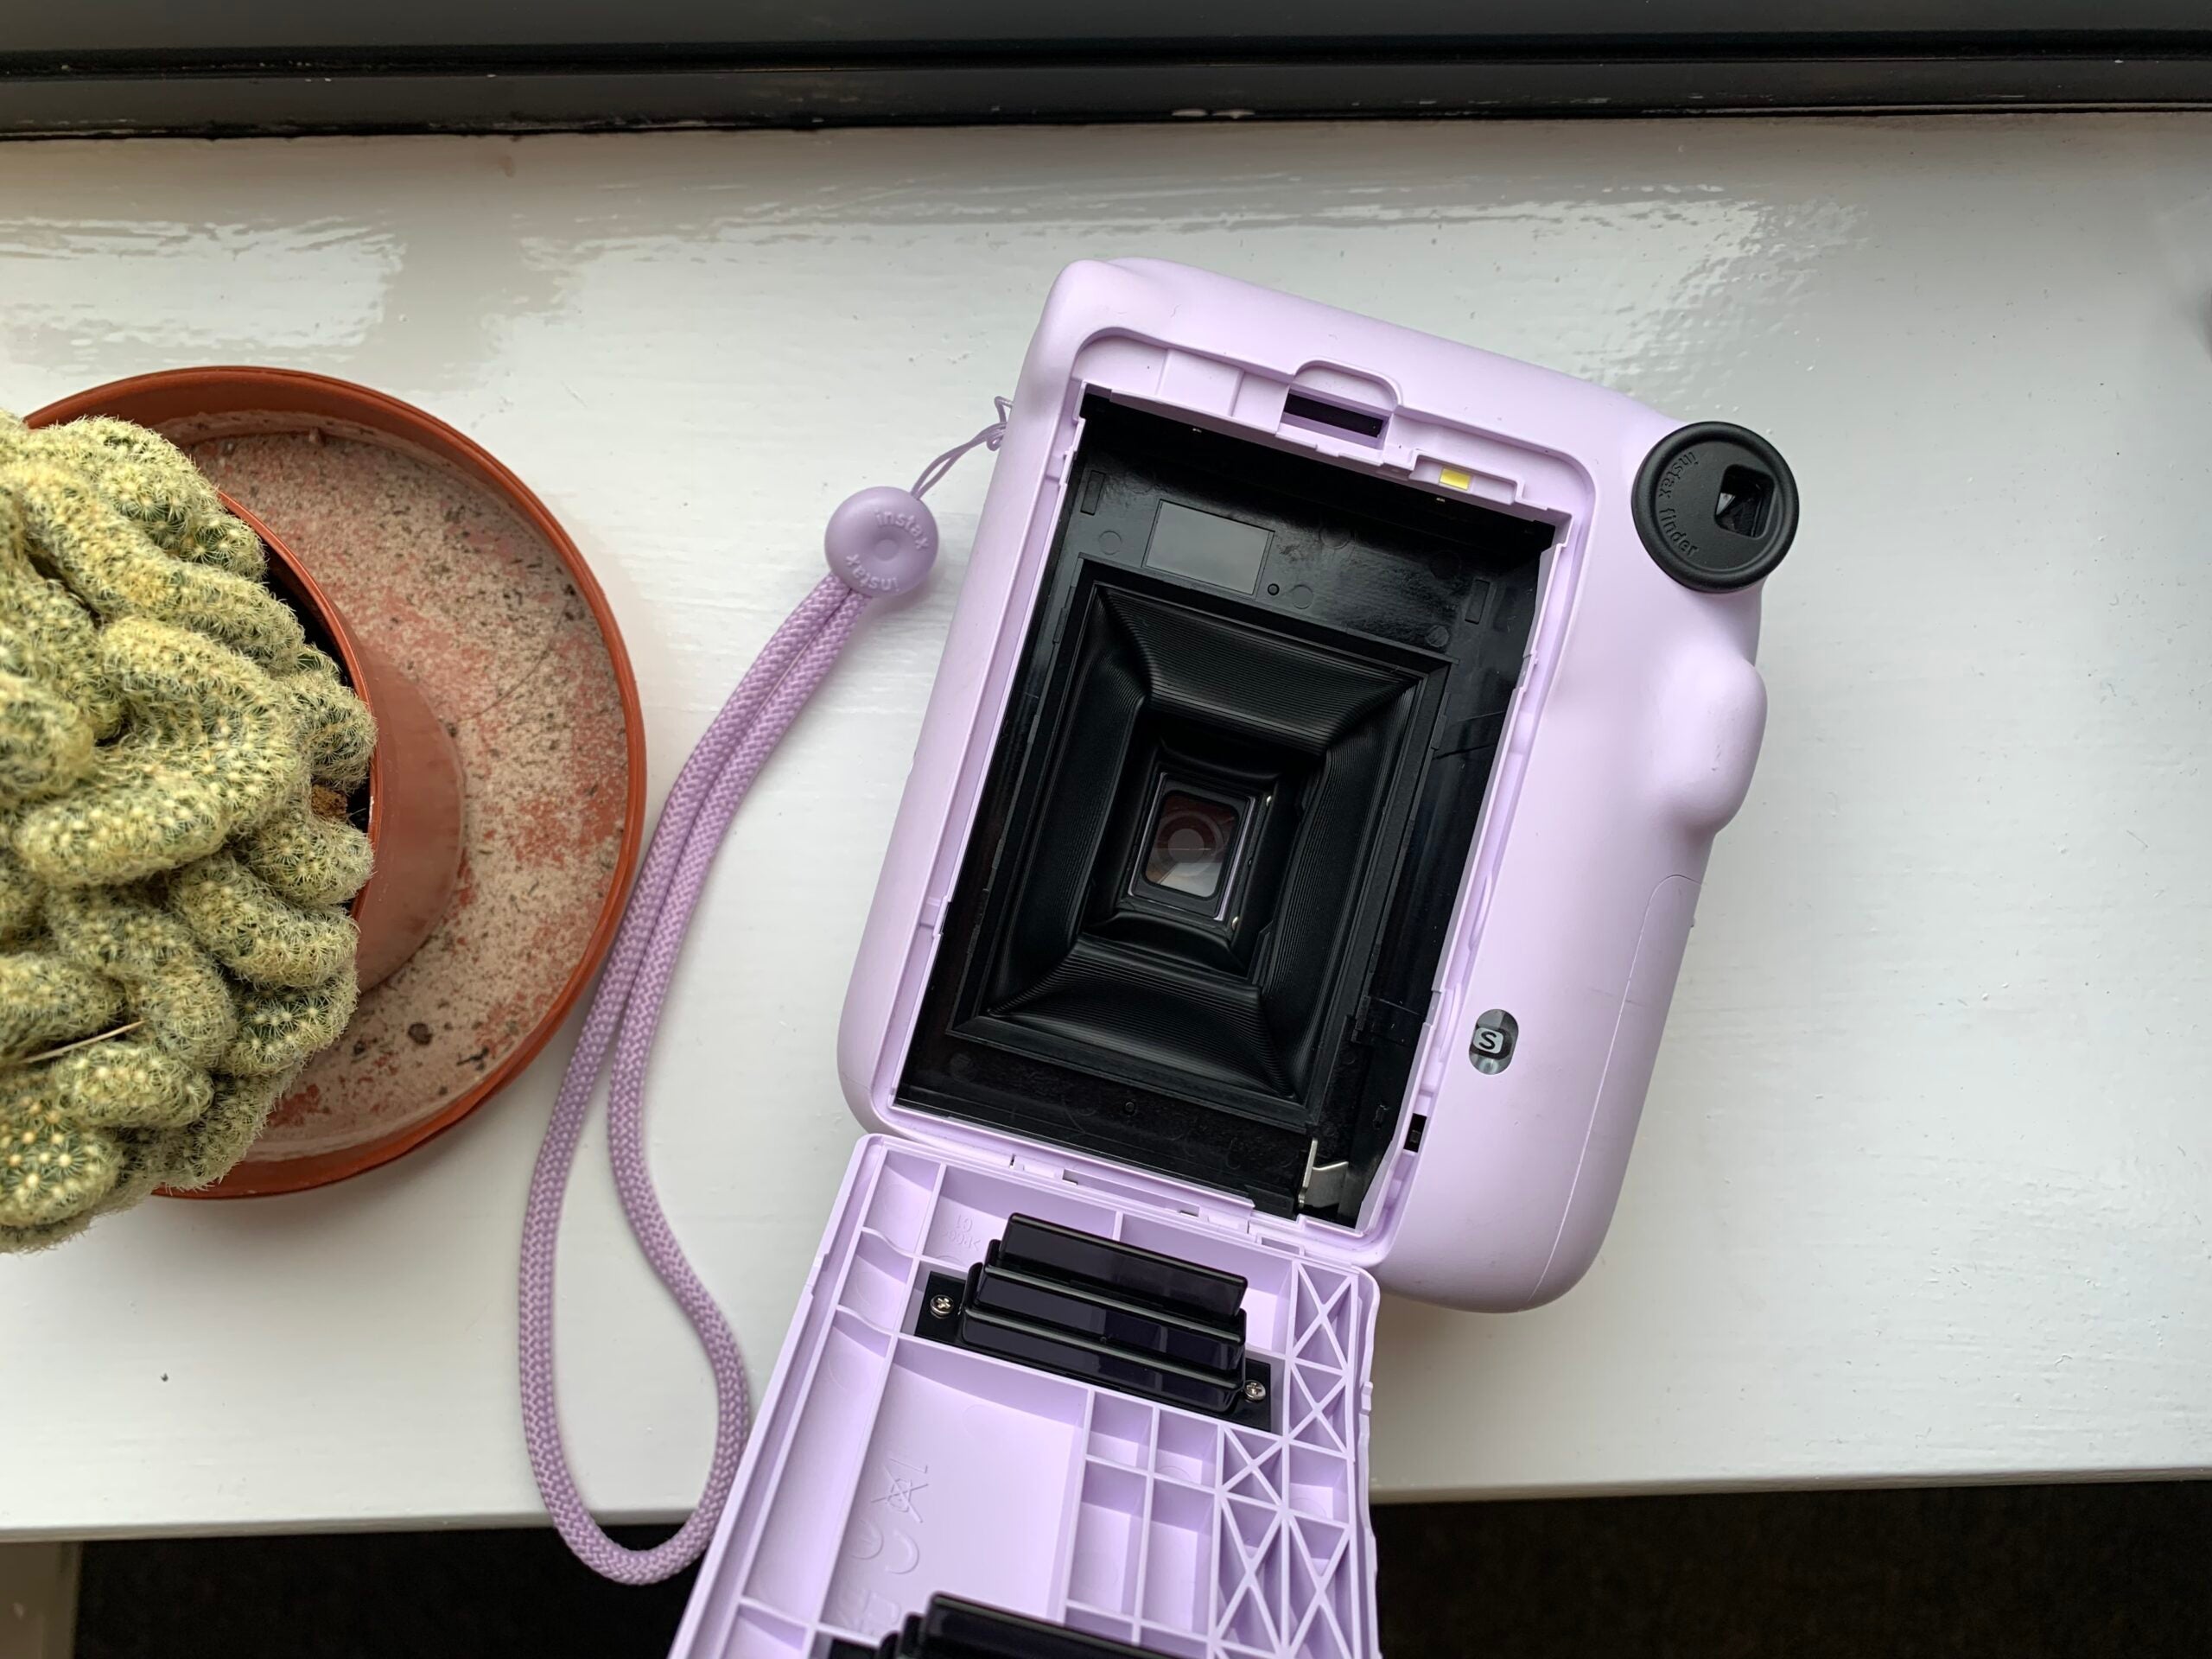 So legen Sie einen Film in eine Instax Mini-Kamera ein